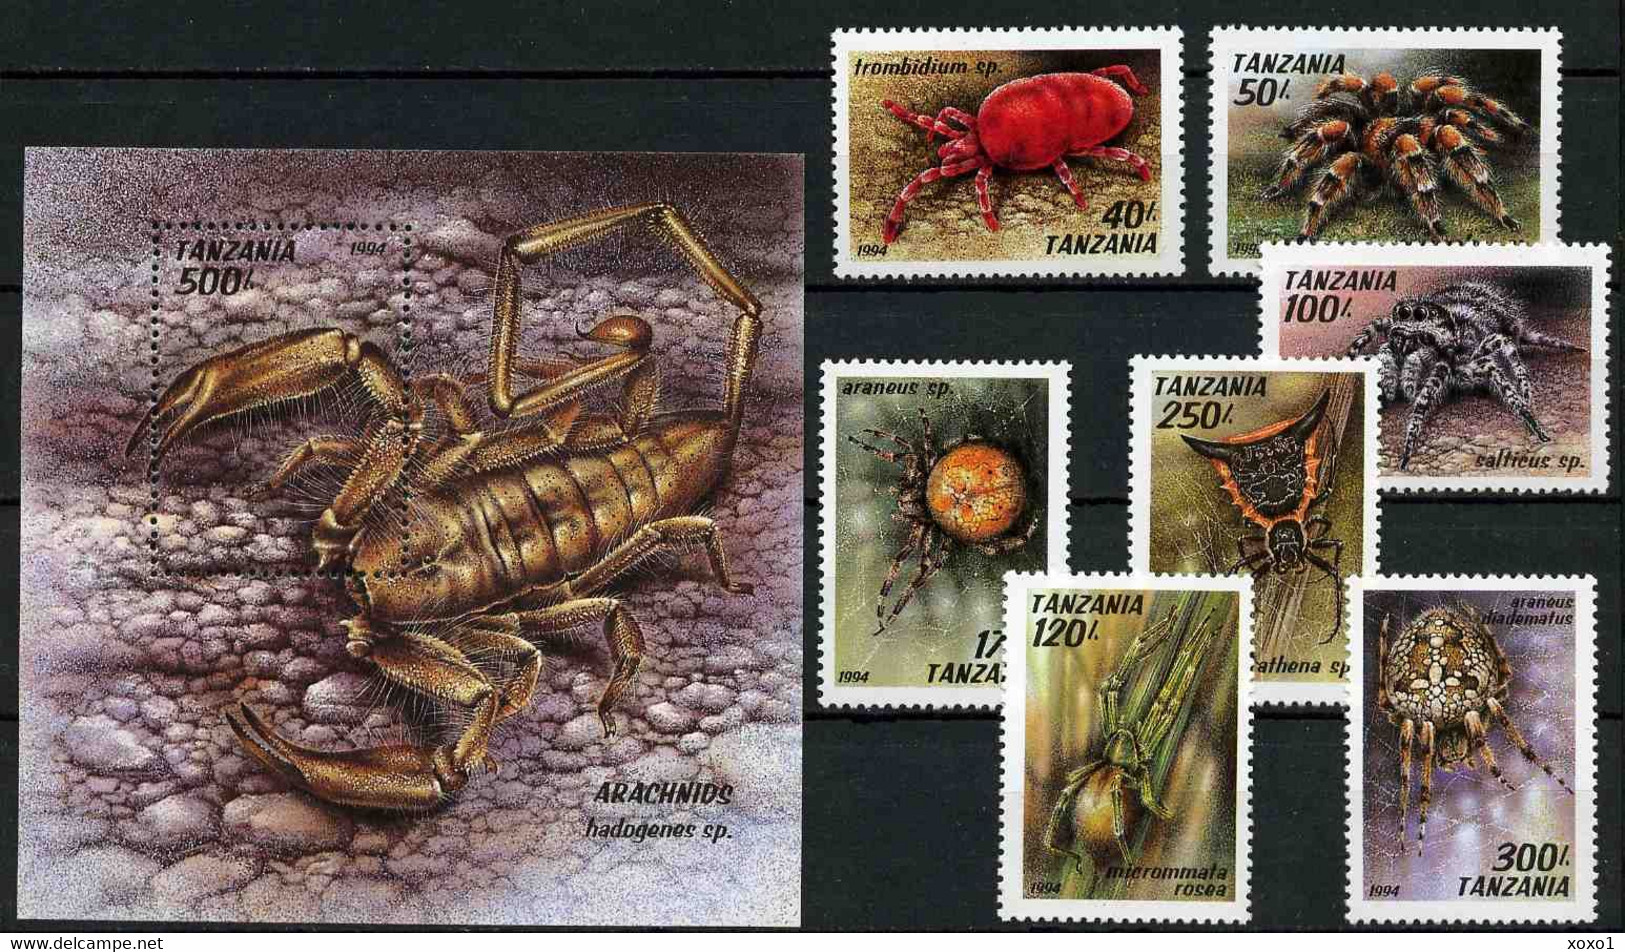 Tanzania 1994 MiNr. 1798 - 1805 (Block 255) Tansania Spiders Spinnentiere  7v+1 MNH**  11,10 € - Araignées